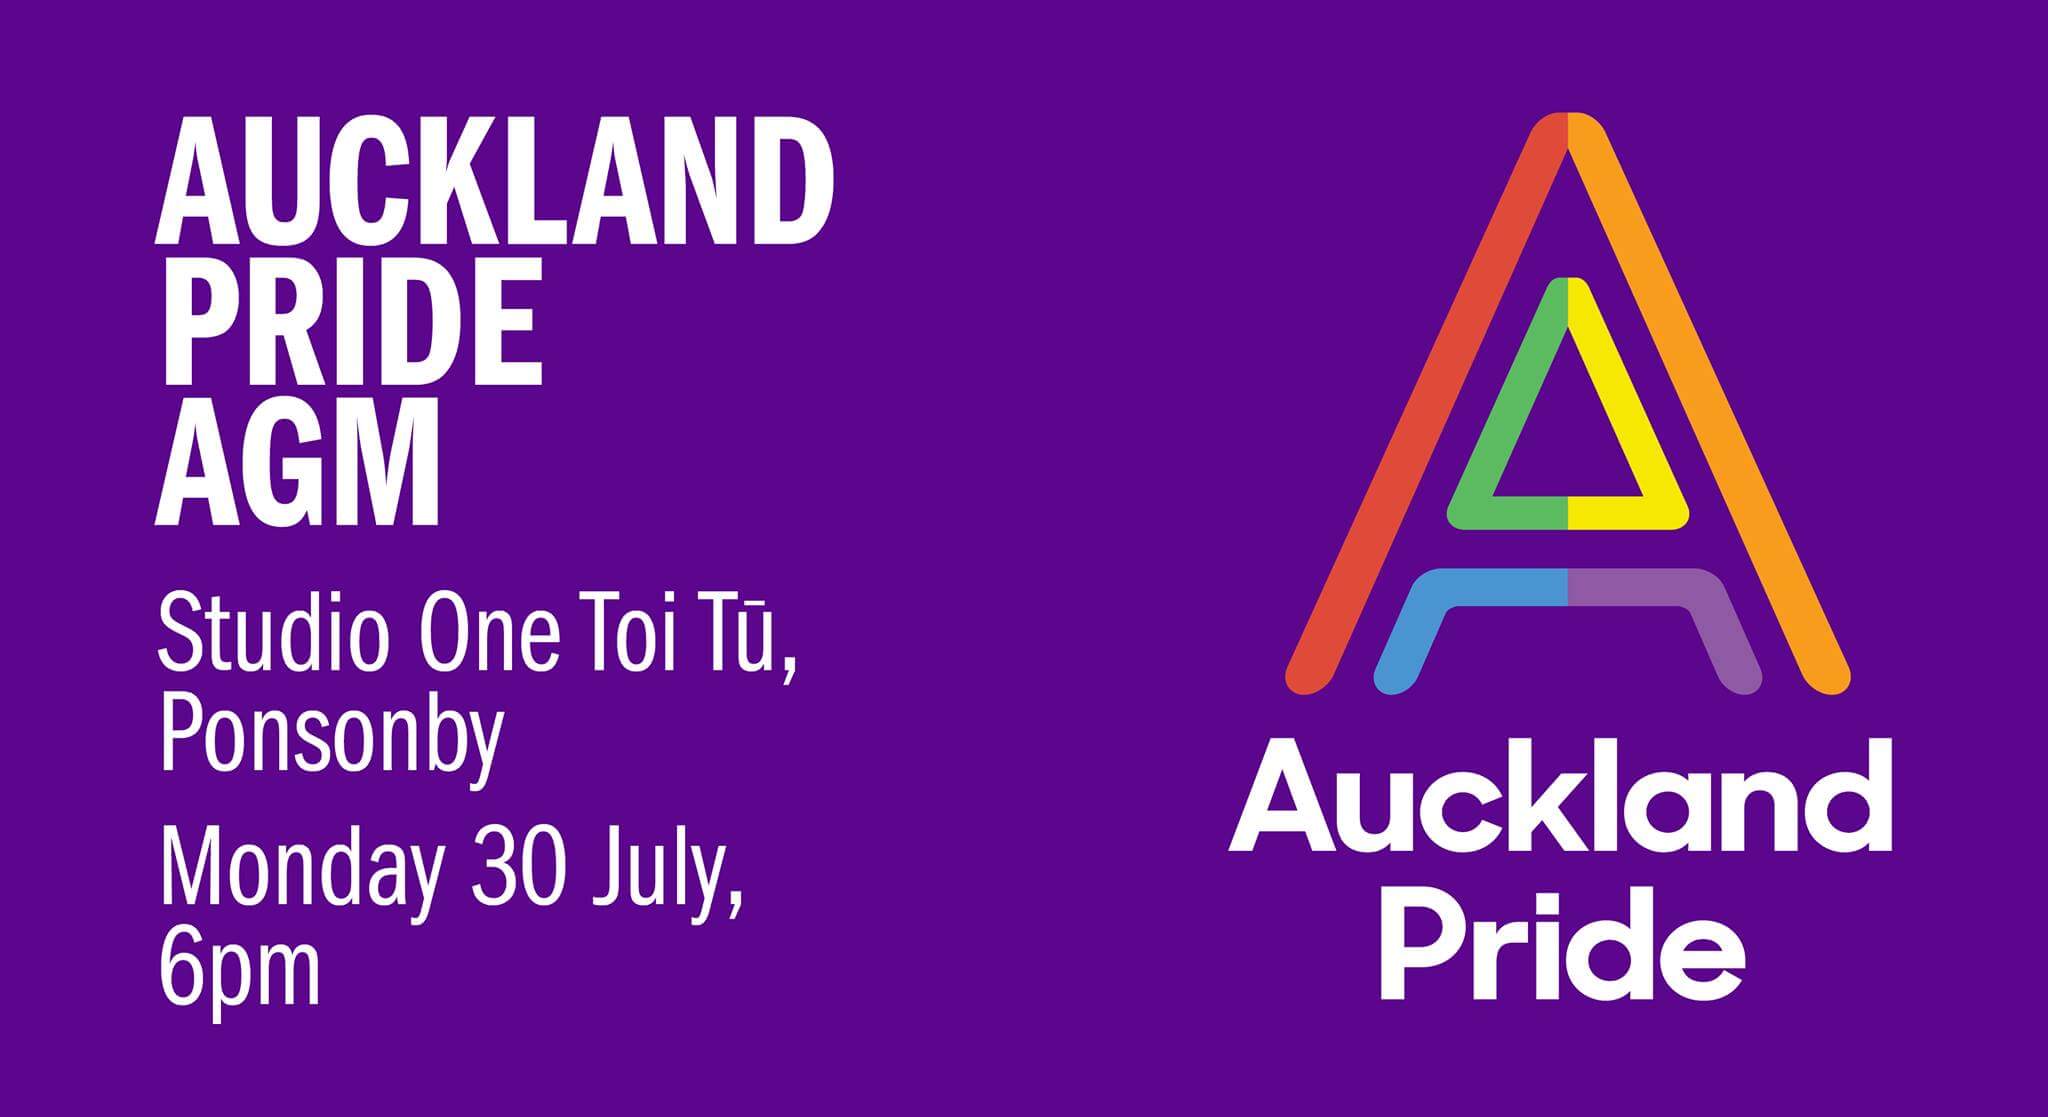 Auckland Pride AGM 2018